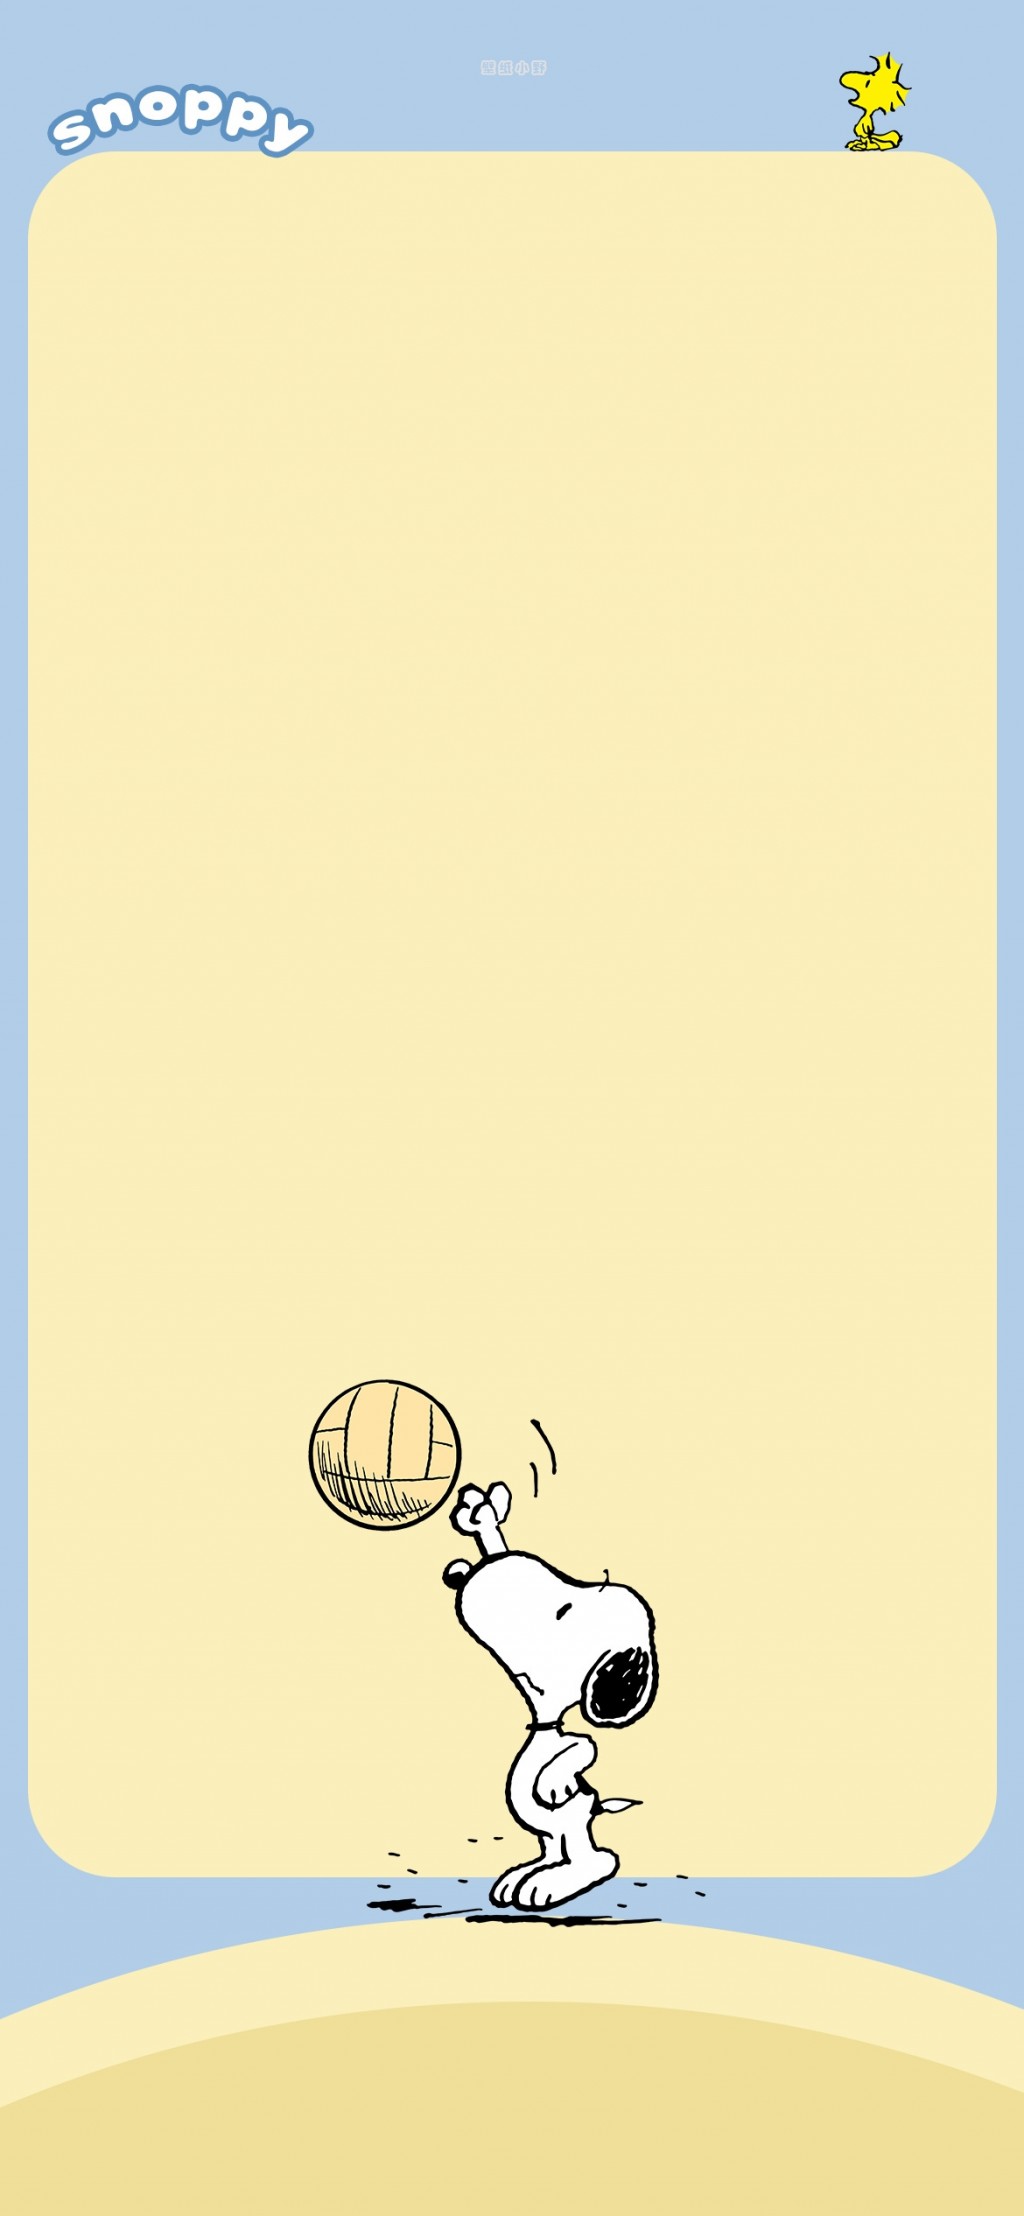 史努比可爱卡通文字祝福手机壁纸